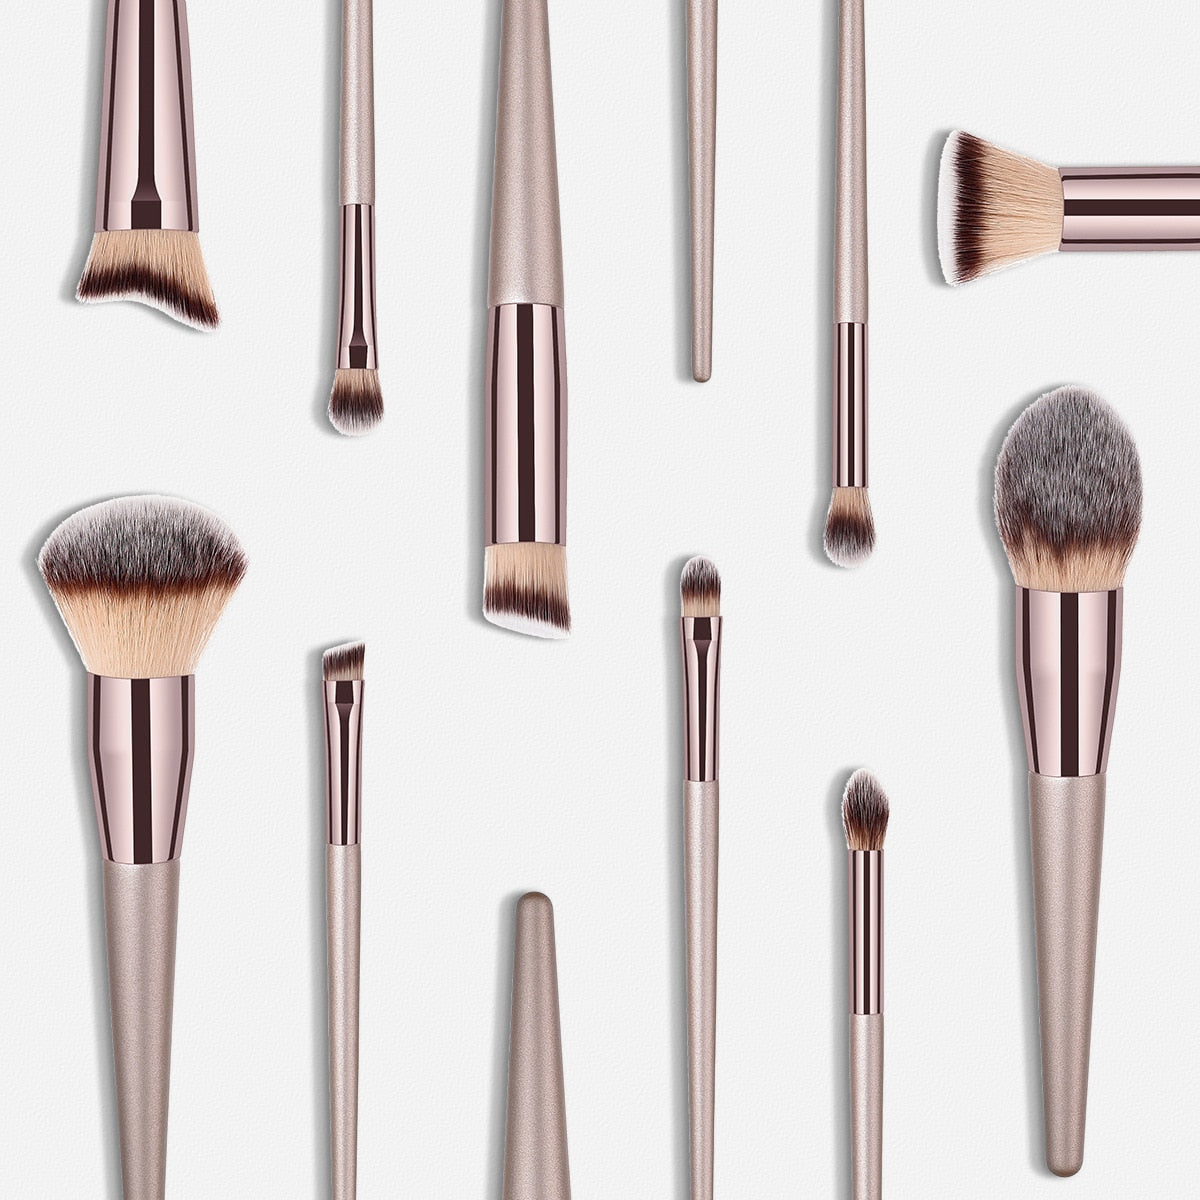 10Pcs/Set High Quality Pro Makeup Brush Kit